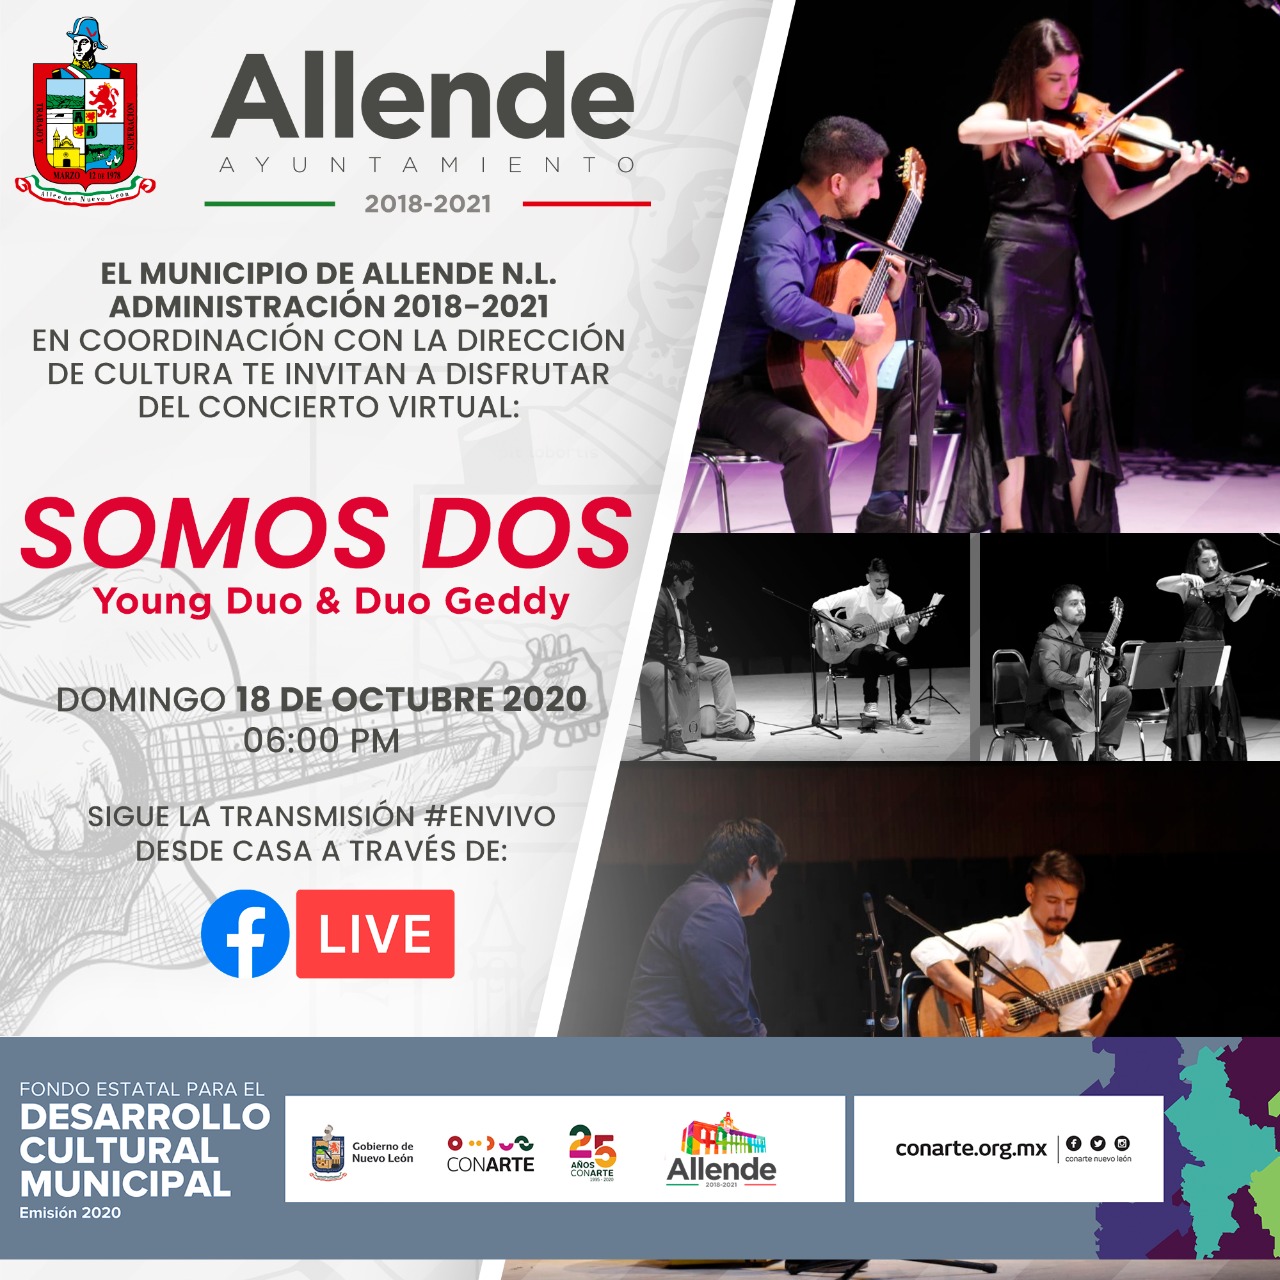 Invita Allende a concierto virtual “Somos Dos” por Young Duo & Duo Geddy